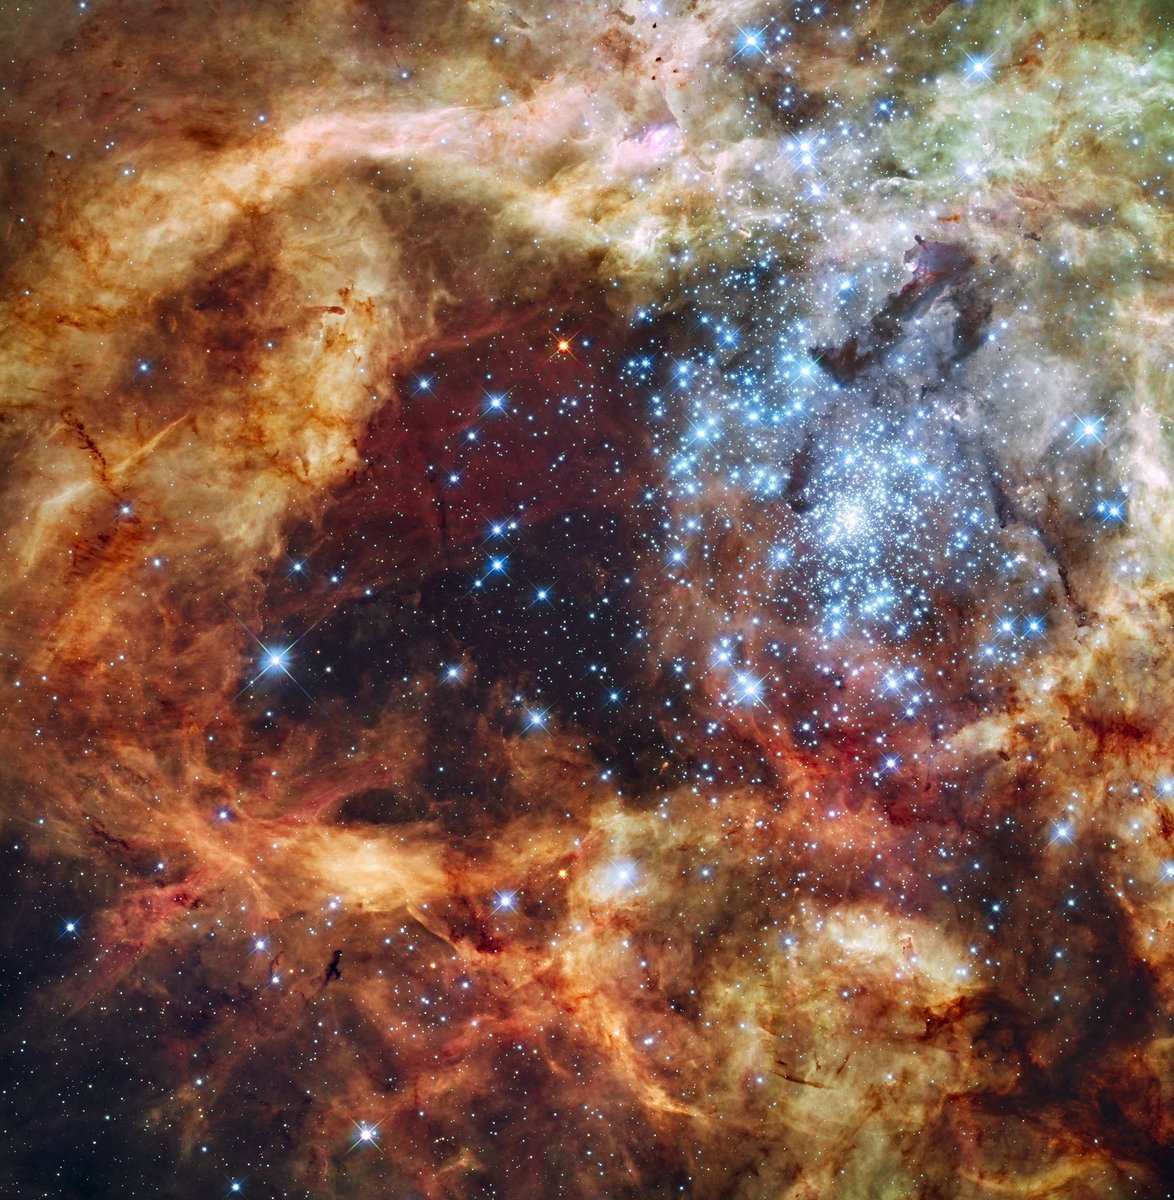 chuu — 30 doradus nebula